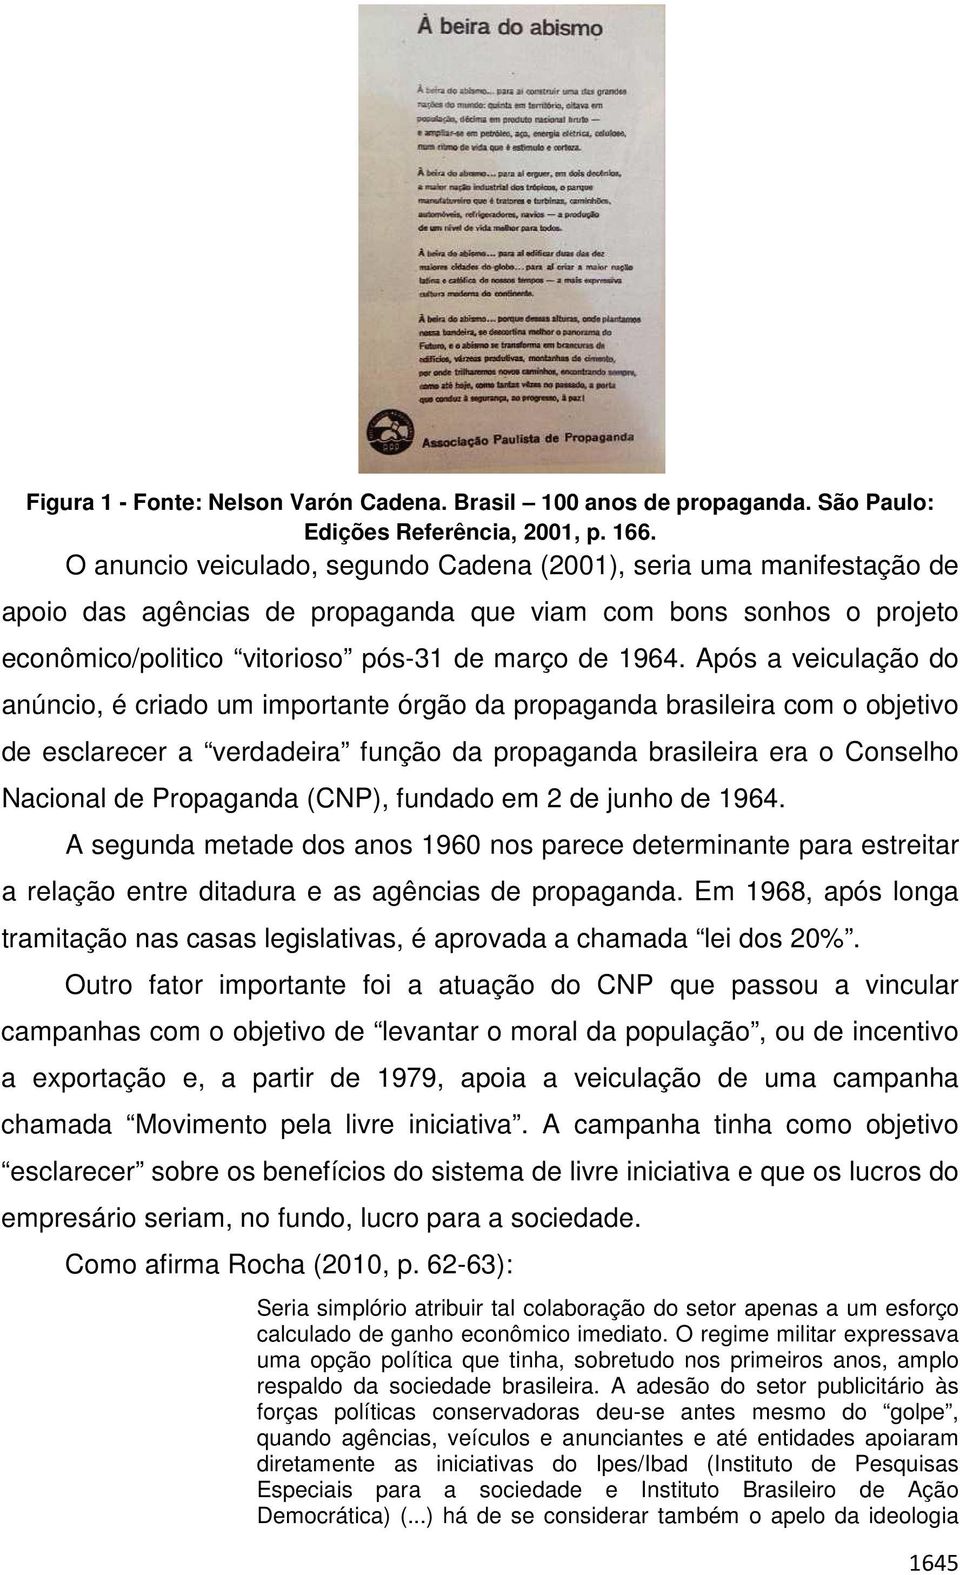 Após a veiculação do anúncio, é criado um importante órgão da propaganda brasileira com o objetivo de esclarecer a verdadeira função da propaganda brasileira era o Conselho Nacional de Propaganda